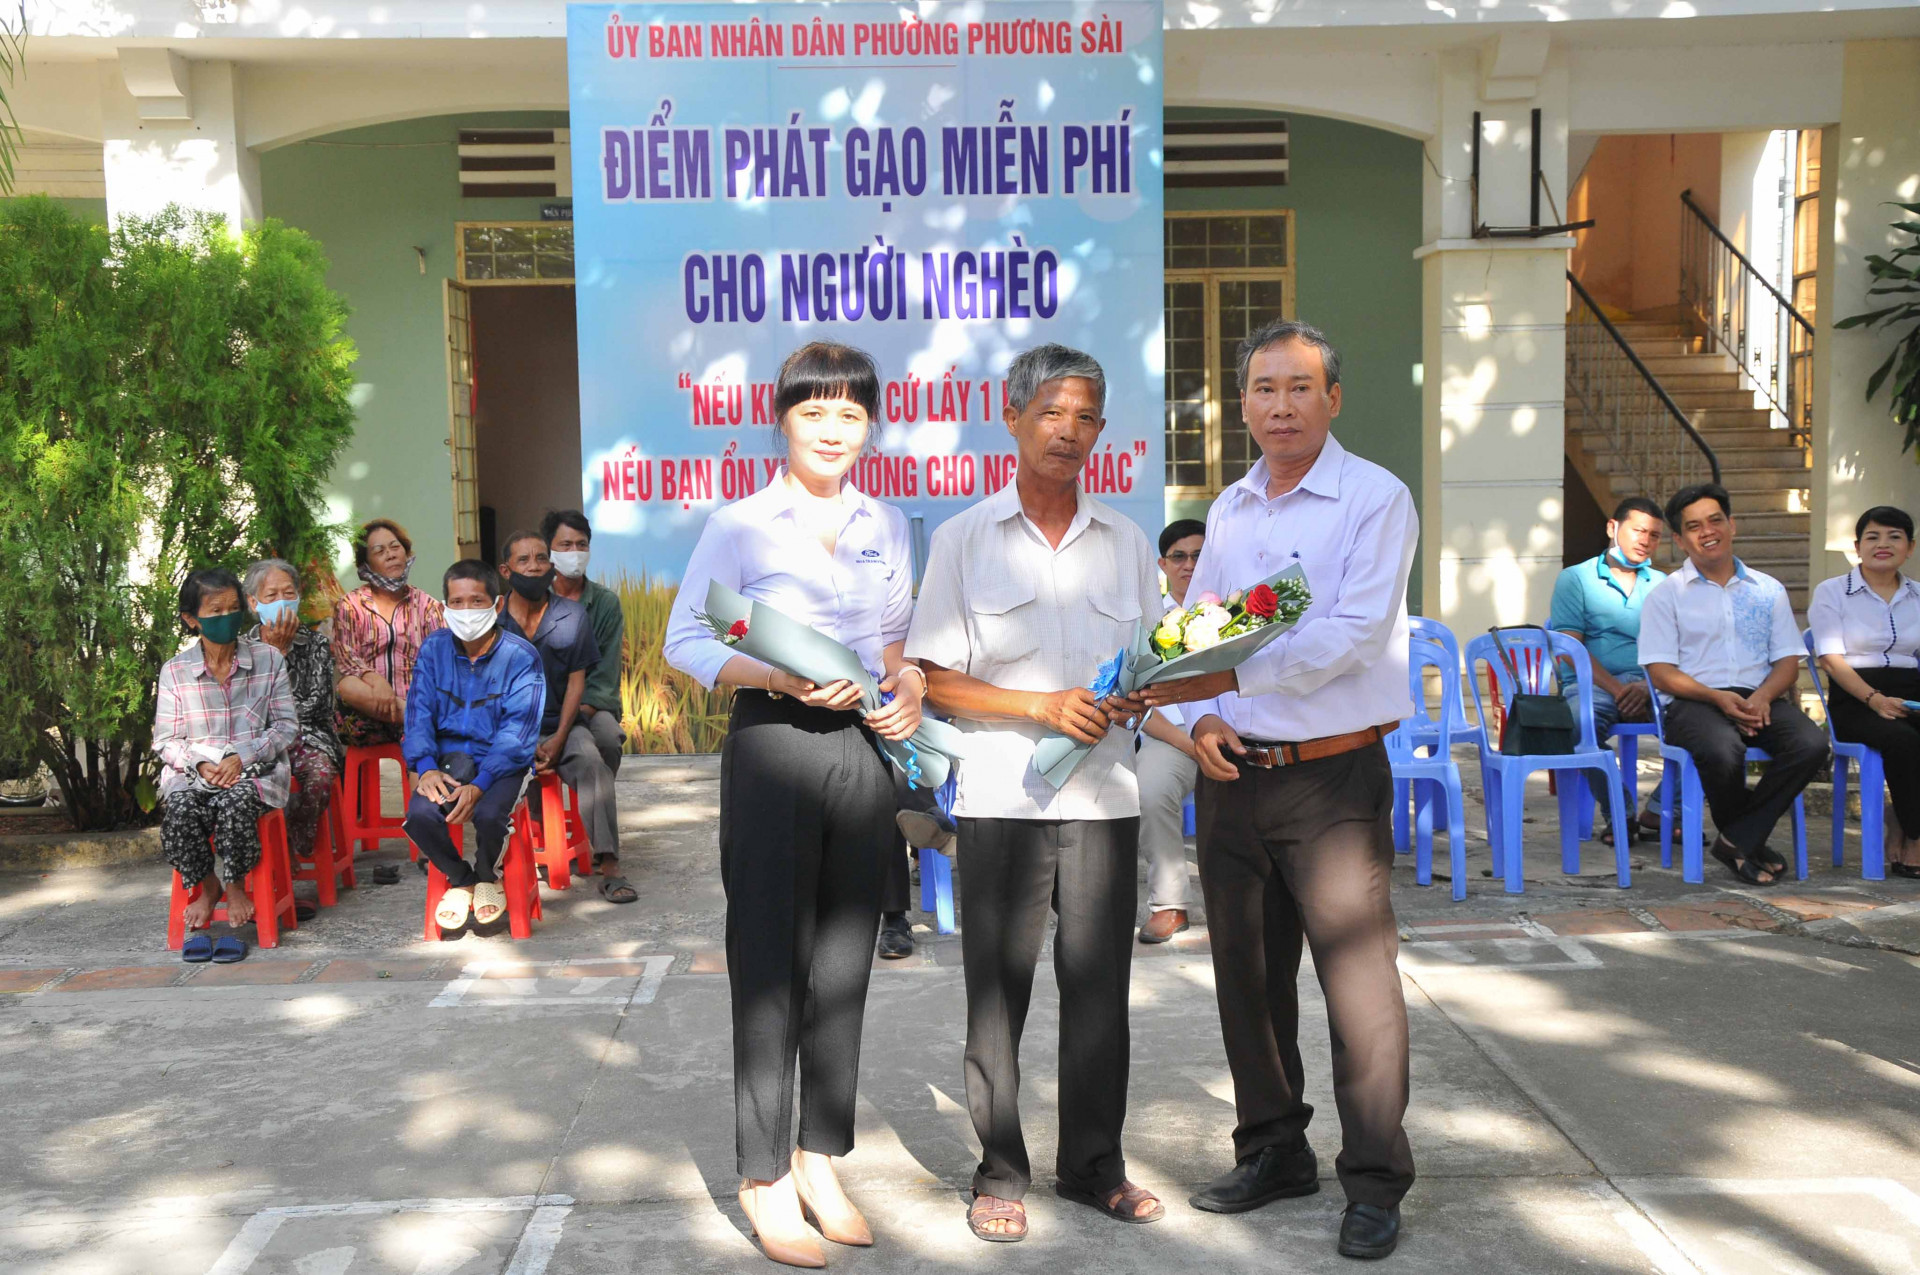 Lãnh đạo phường Phương Sài tặng hoa tri ân các nhà hảo tâm đã hỗ trợ cho máy  "ATM gạo "